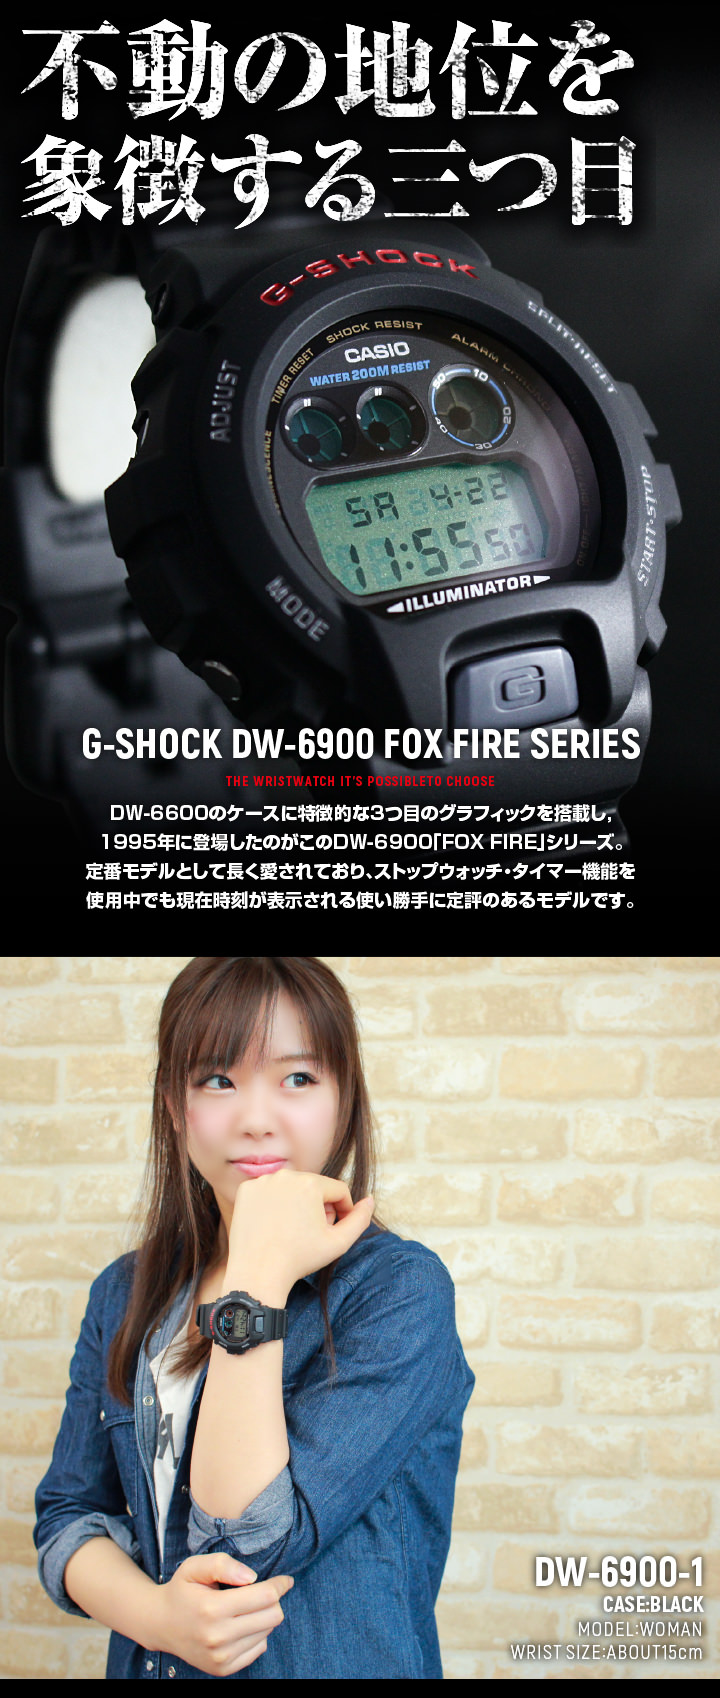 【楽天市場】CASIO カシオ G-SHOCK Gショック ジーショック メンズ 腕時計 新品 時計 多機能 防水 DW-6900-1V 海外